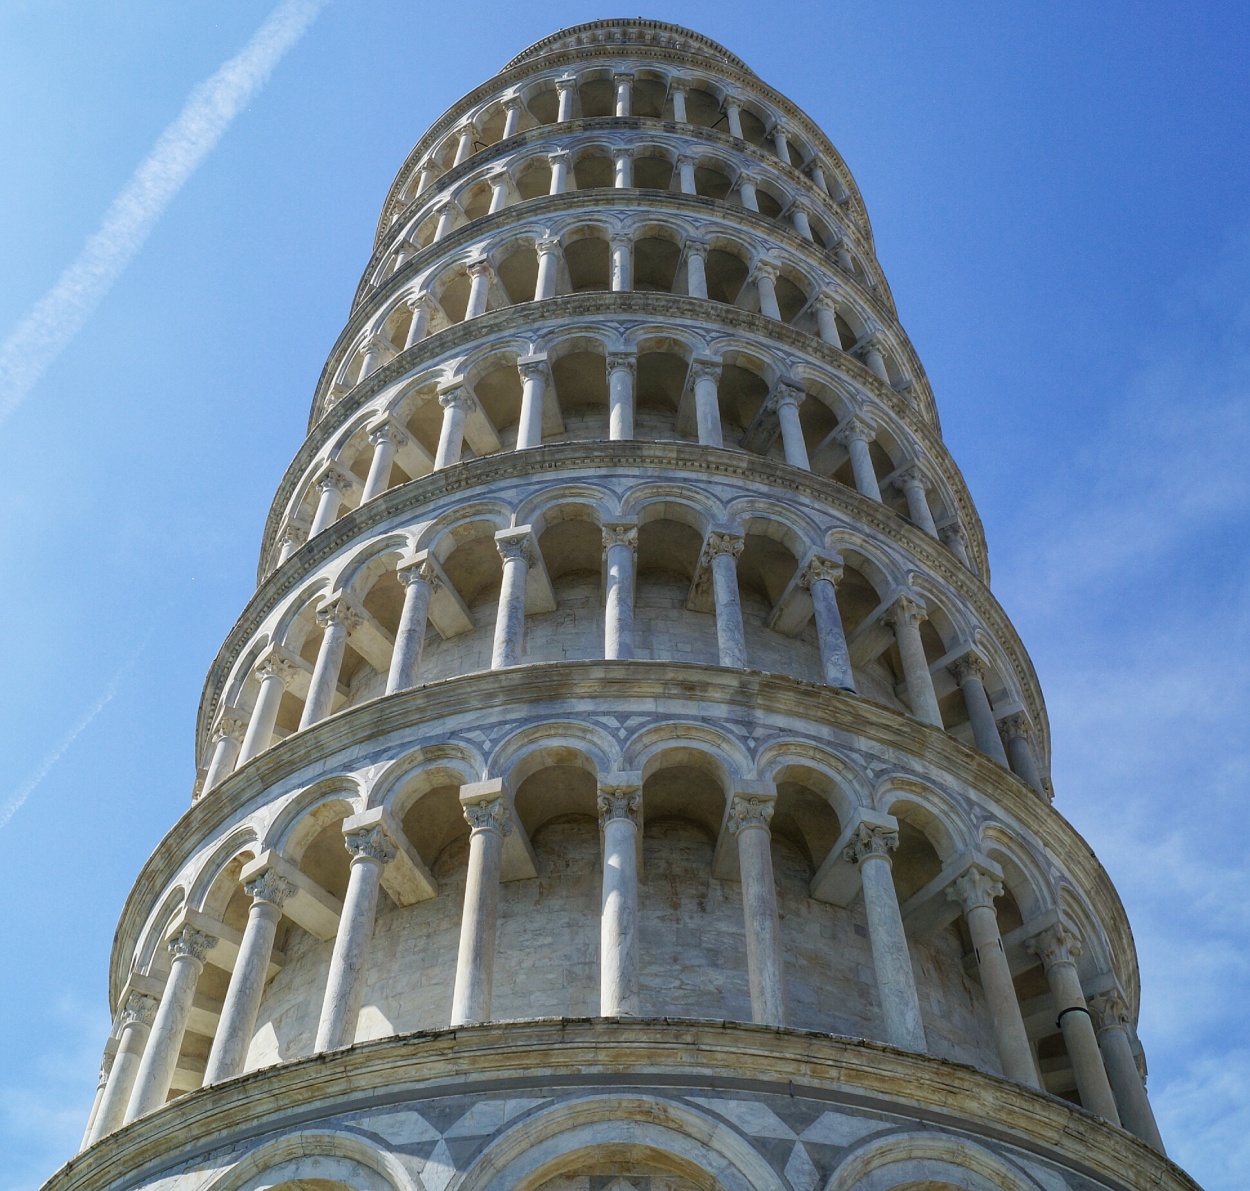 "Torre di pisa, pisa, italia" de Sergio Valdez